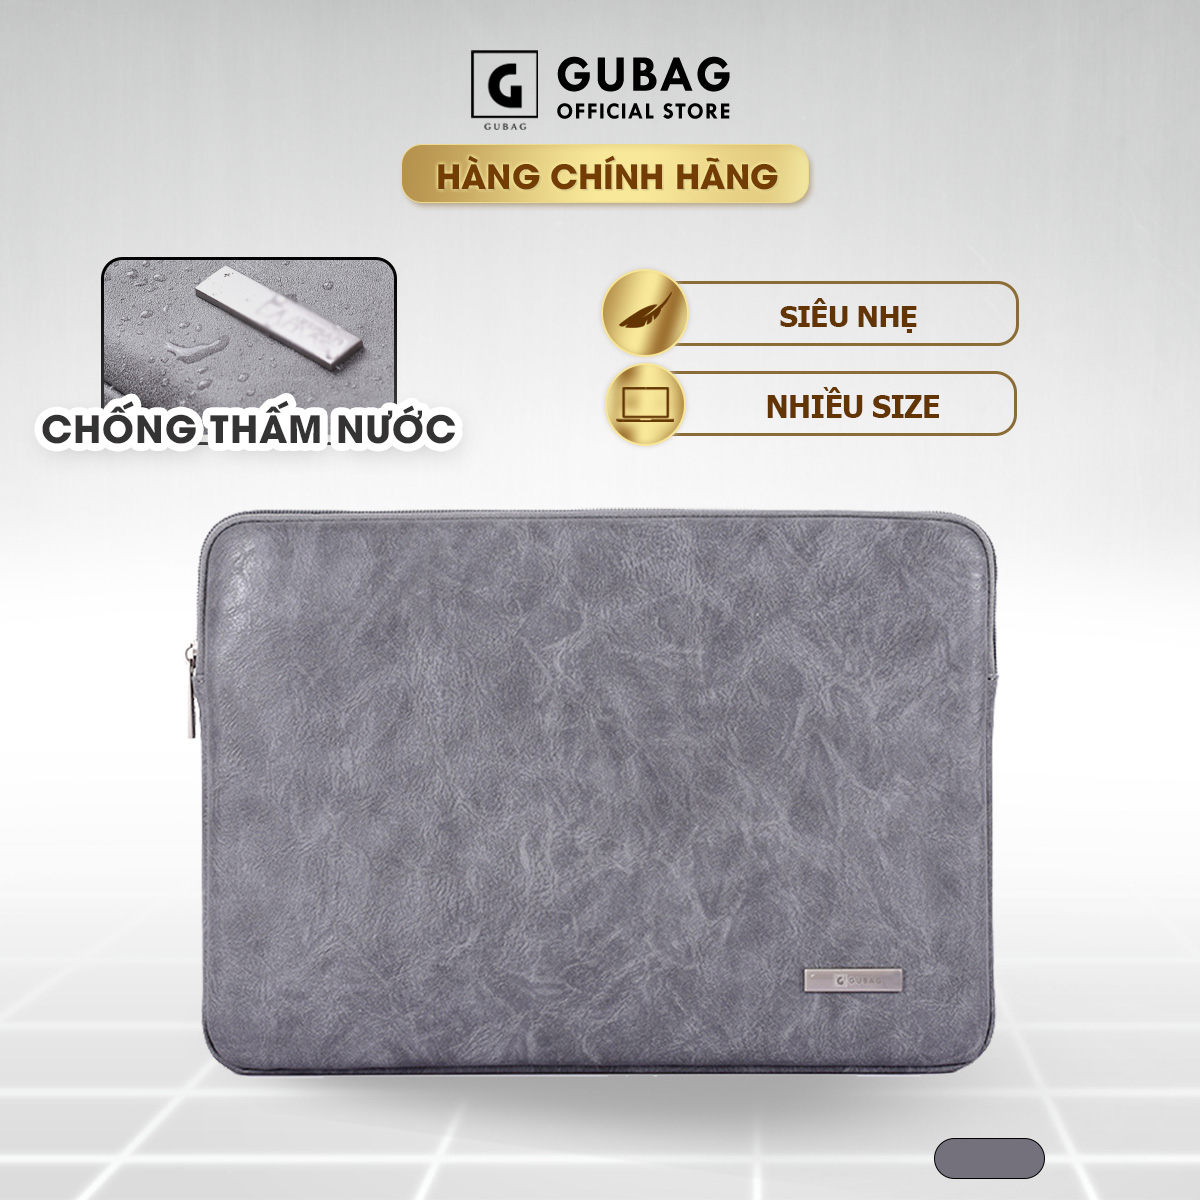 Túi chống sốc Macbook M1, M2, Macbook Air, Pro GB-CS03 chính hãng Gu Bag, công nghệ giảm chấn bảo vệ laptop, chống va đập máy tính an toàn hiệu quả